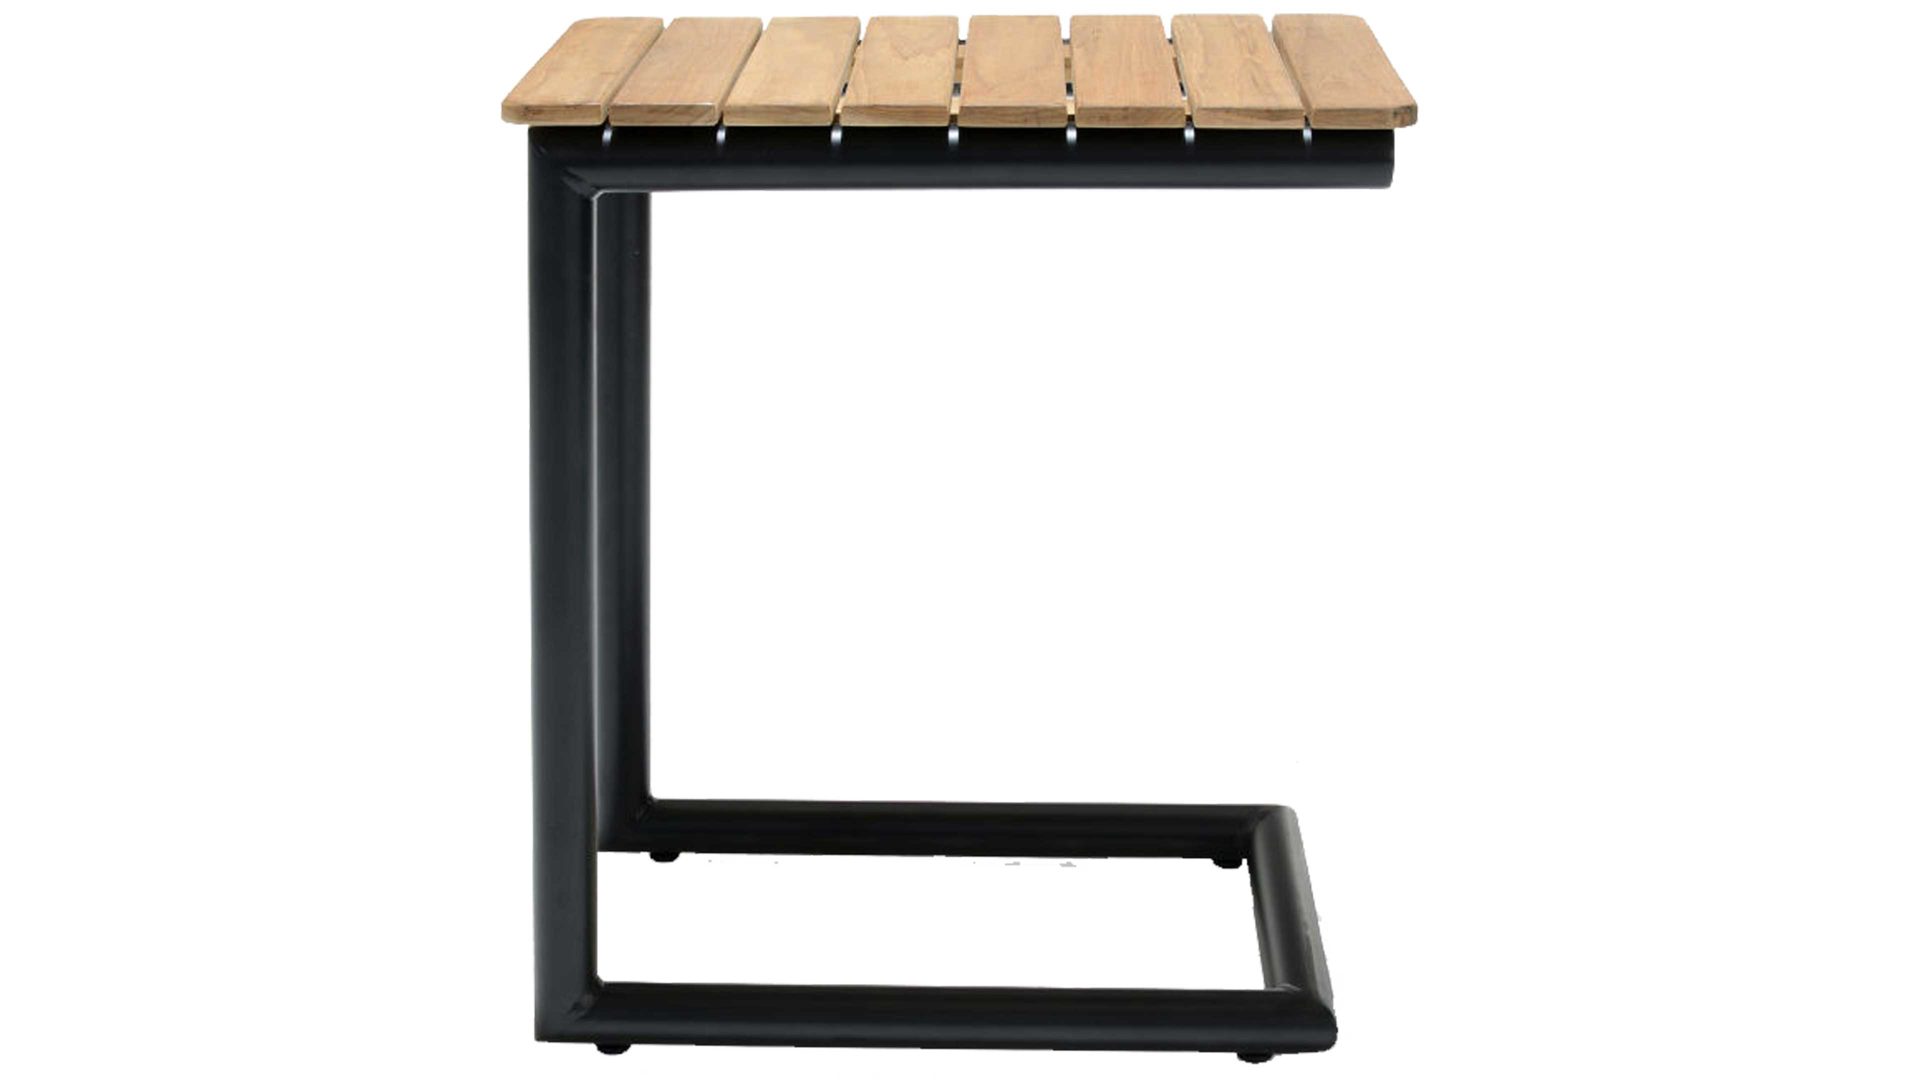 Gartentisch Scancom aus Holz in Holzfarben LifestyleGarden® Loungemöbel-Serie Portals - Beistelltisch Teakholz & schwarzes Aluminium - Höhe ca. 55 cm